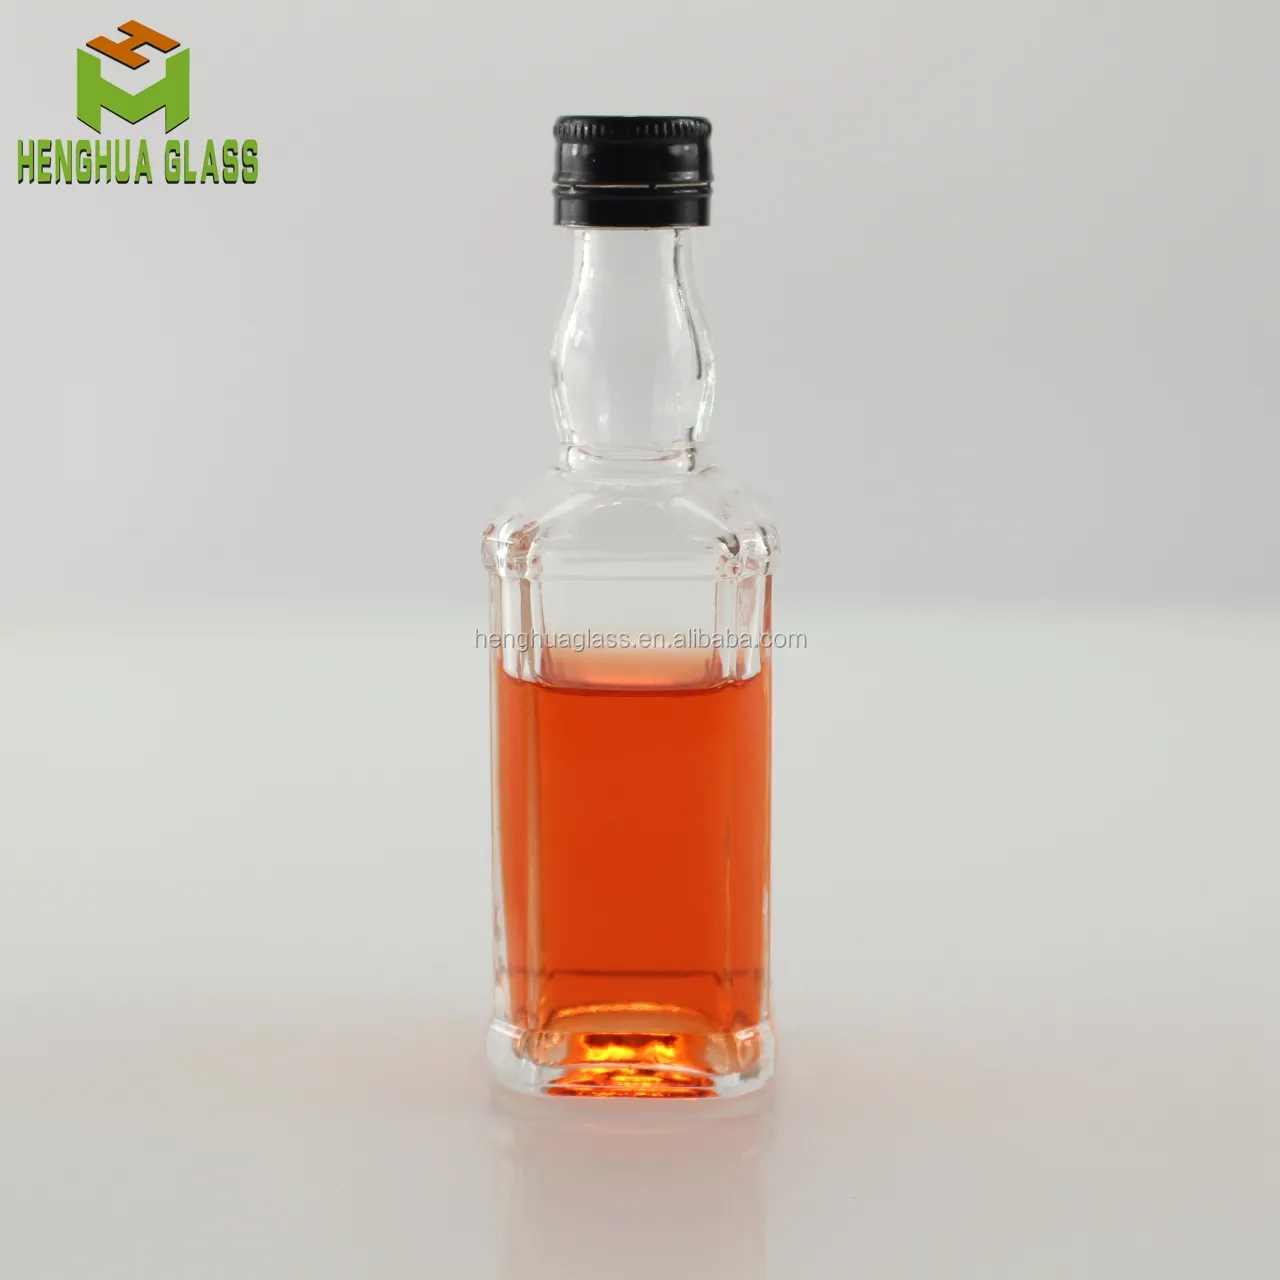 Bouteille de whisky en verre carré de 50ml, bouteille en verre avec couvercles à vis